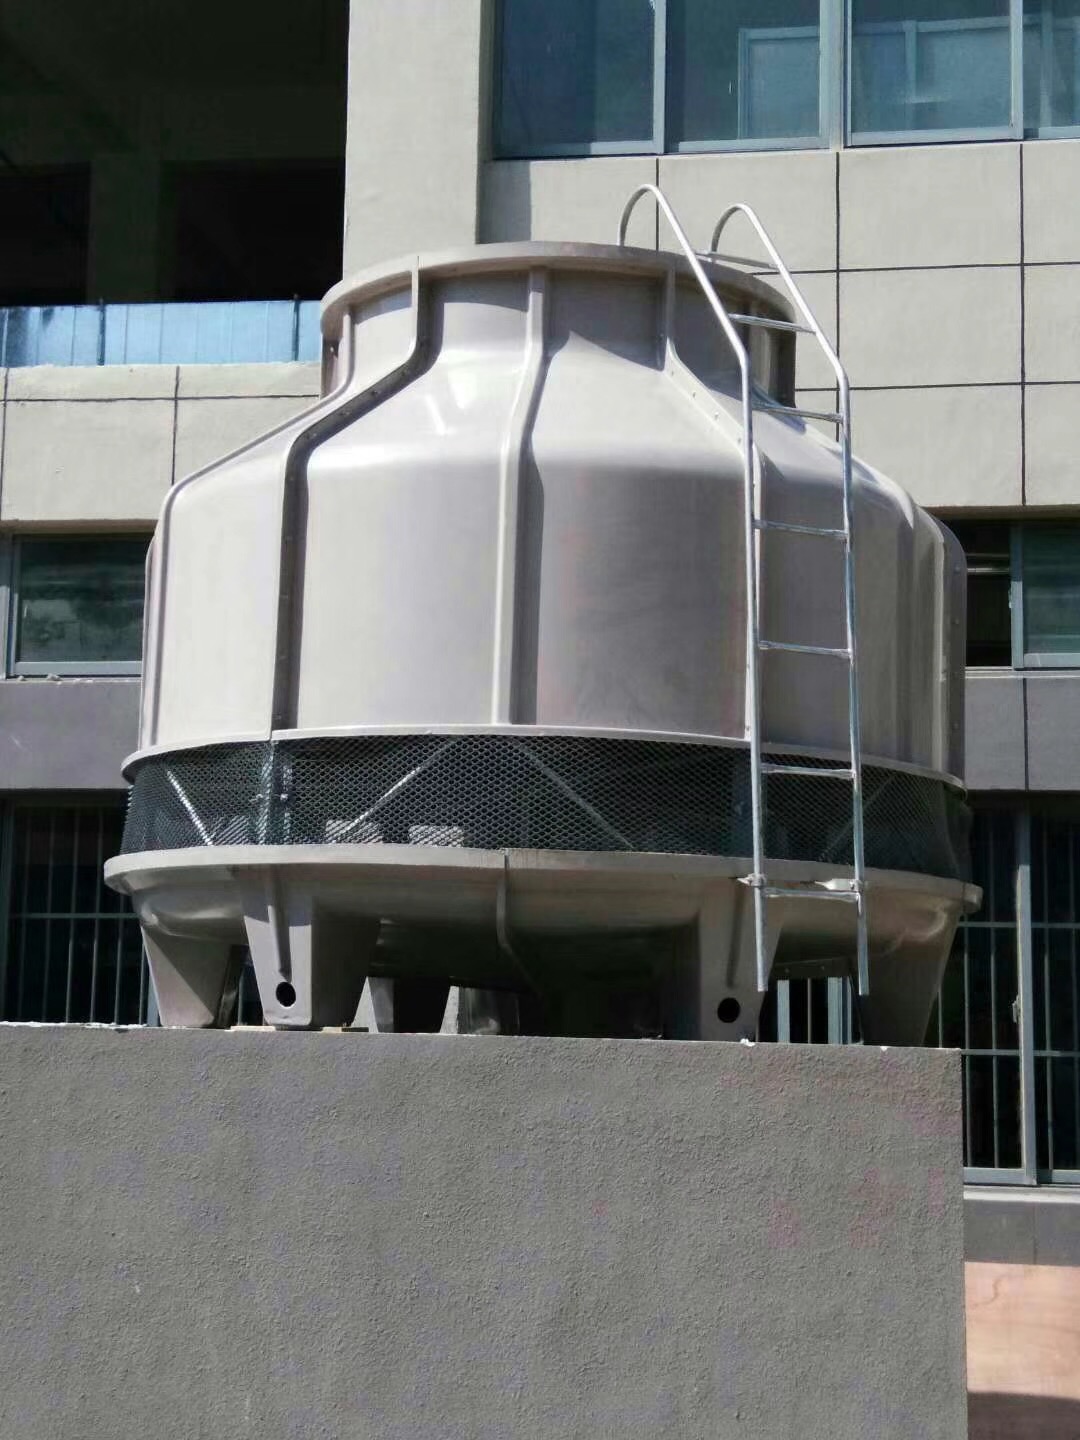 150吨冷却水塔 圆形冷却水塔填料琴江QJ-150凉水塔 供应大型冷却水塔 维修更换保养2